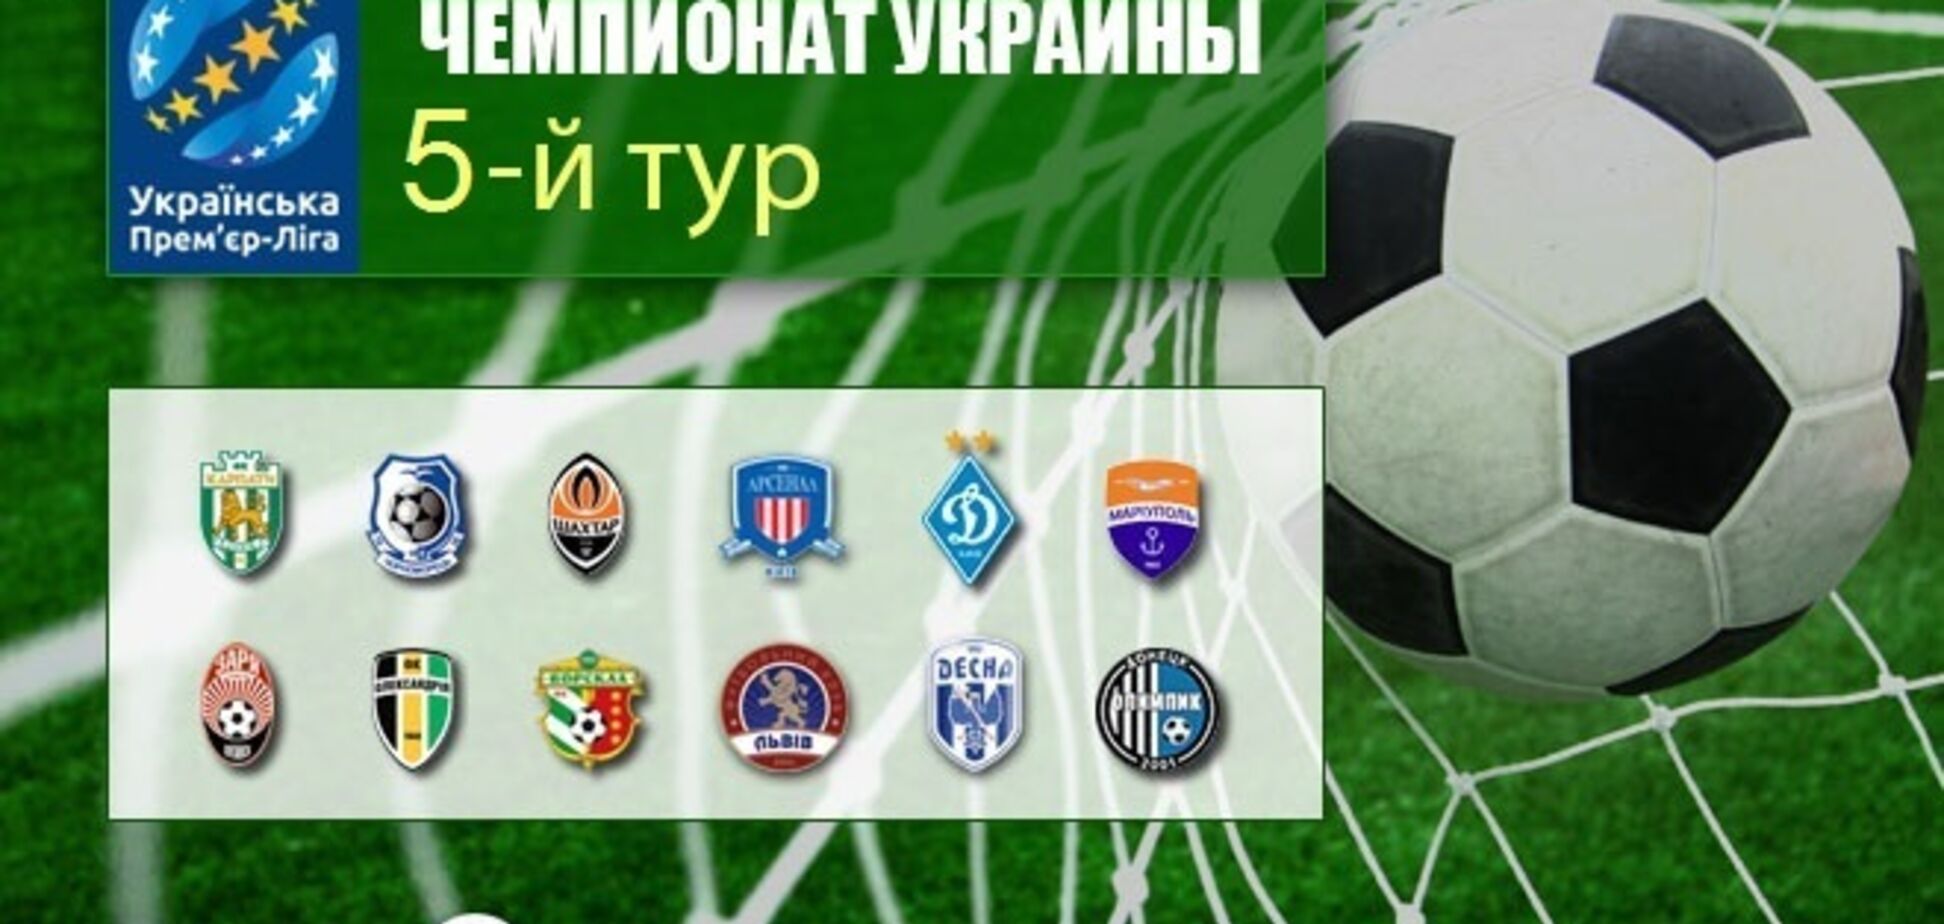 5-й тур чемпионата Украины по футболу: результаты и обзоры